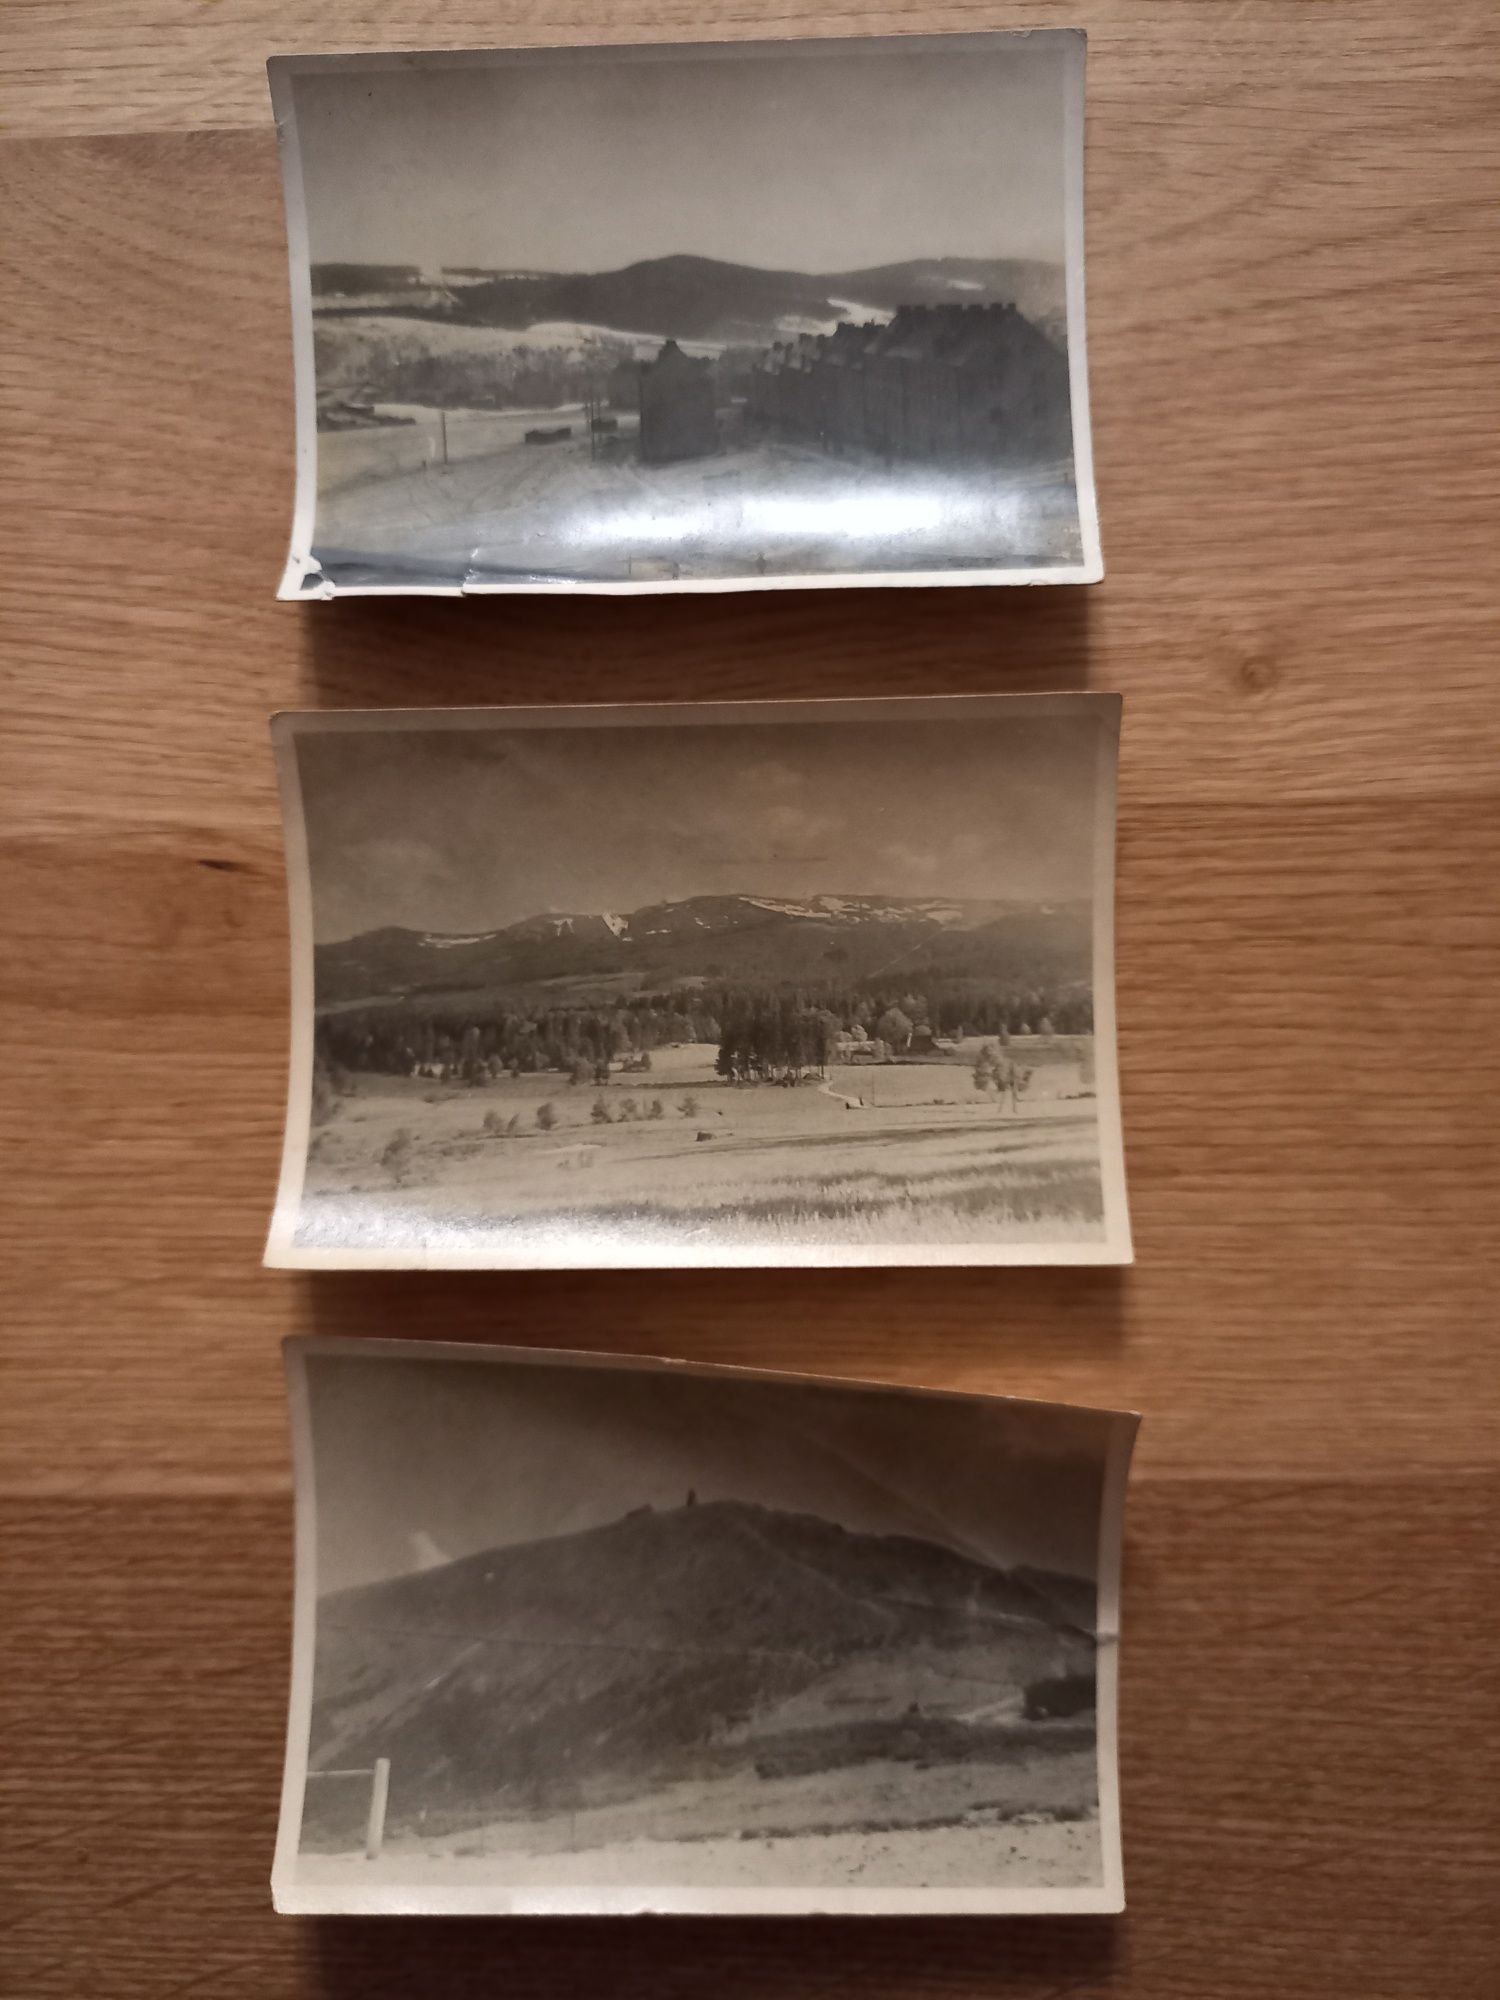 Zdjęcia z Karkonoszy i Wałbrzych - prawdopodobnie 1947 rok